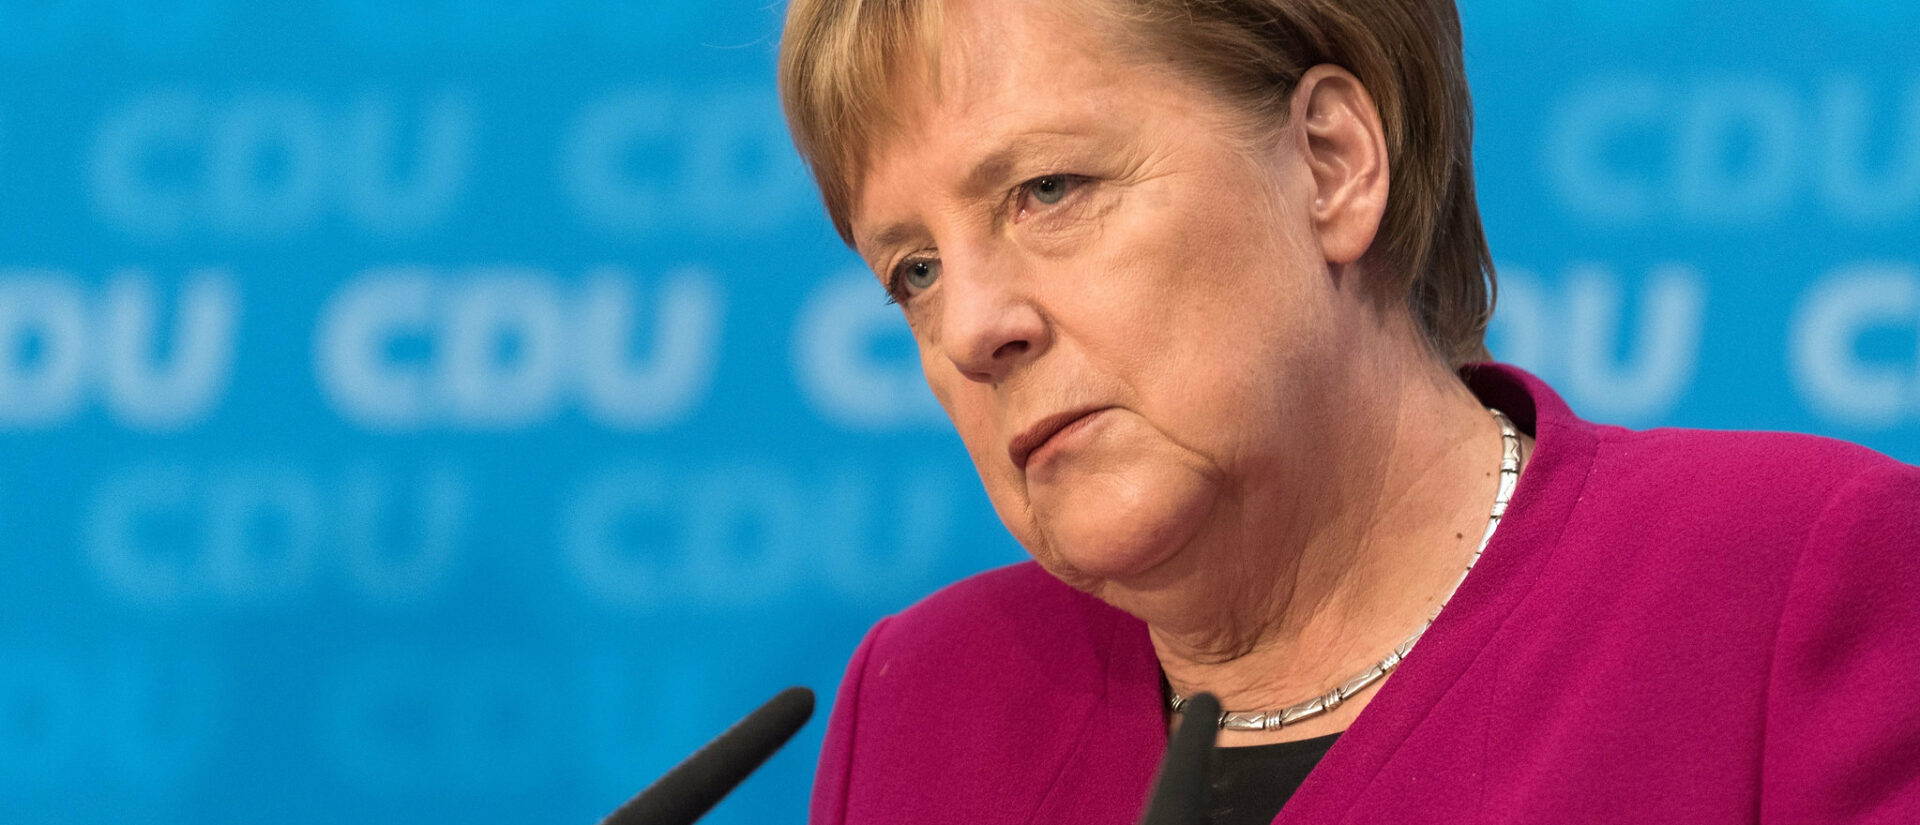 La chancelière Angela Merkel s'est entretenue avec le pape sur des thématiques tragiques et inquiétantes | © Faces of the World/Flickr/CC BY 2.0